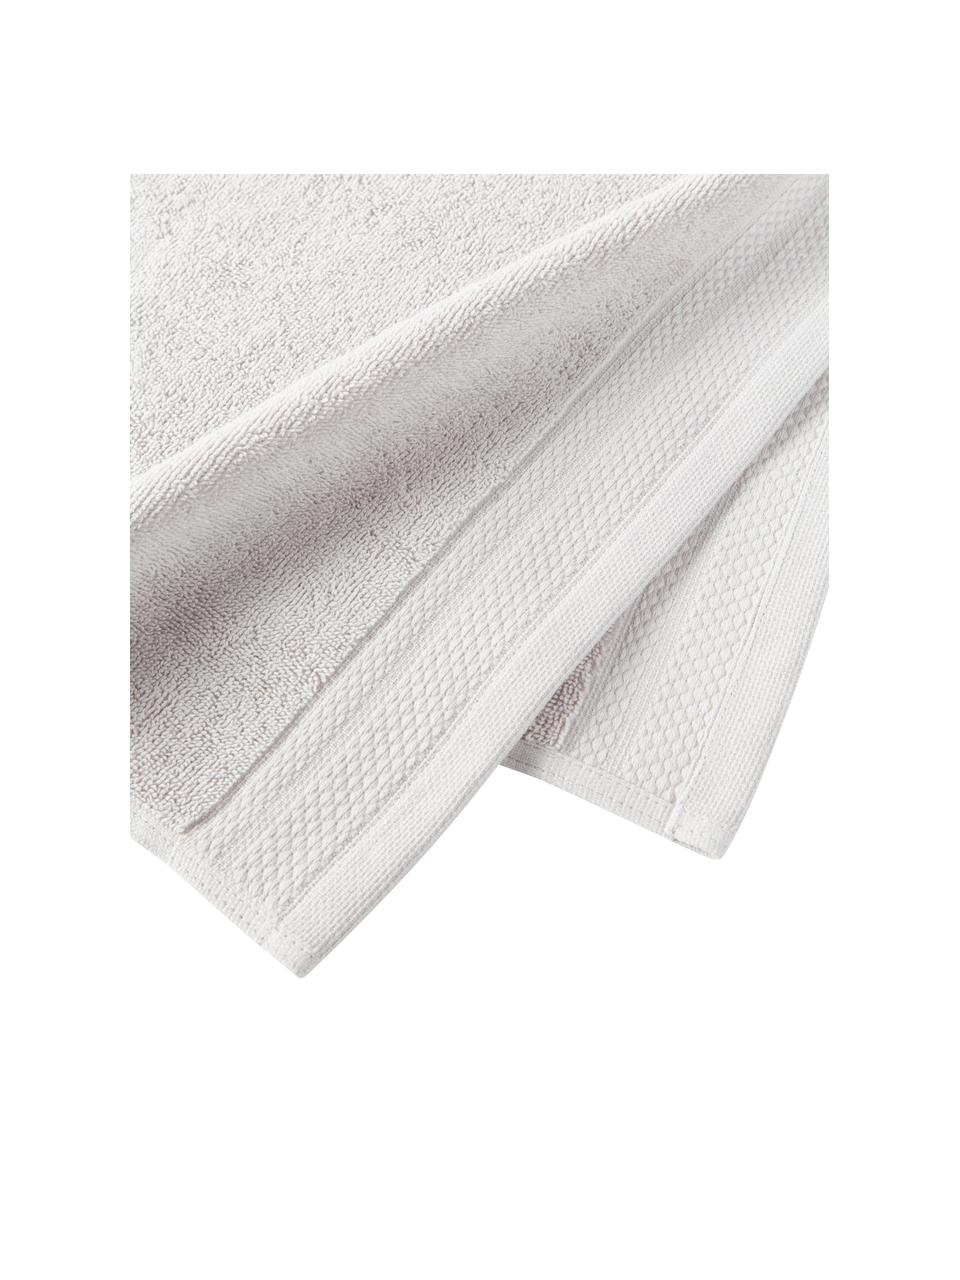 Set de toallas de algodón ecológico Premium, 4 uds., 100% algodón con certificado GOTS
Gramaje superior 600 g/m²

El material utilizado para este producto ha sido probado contra sustancias nocivas y está certificado según el STANDARD 100 por OEKO-TEX®,, IS025 189577, OETI., Gris claro, Set de diferentes tamaños